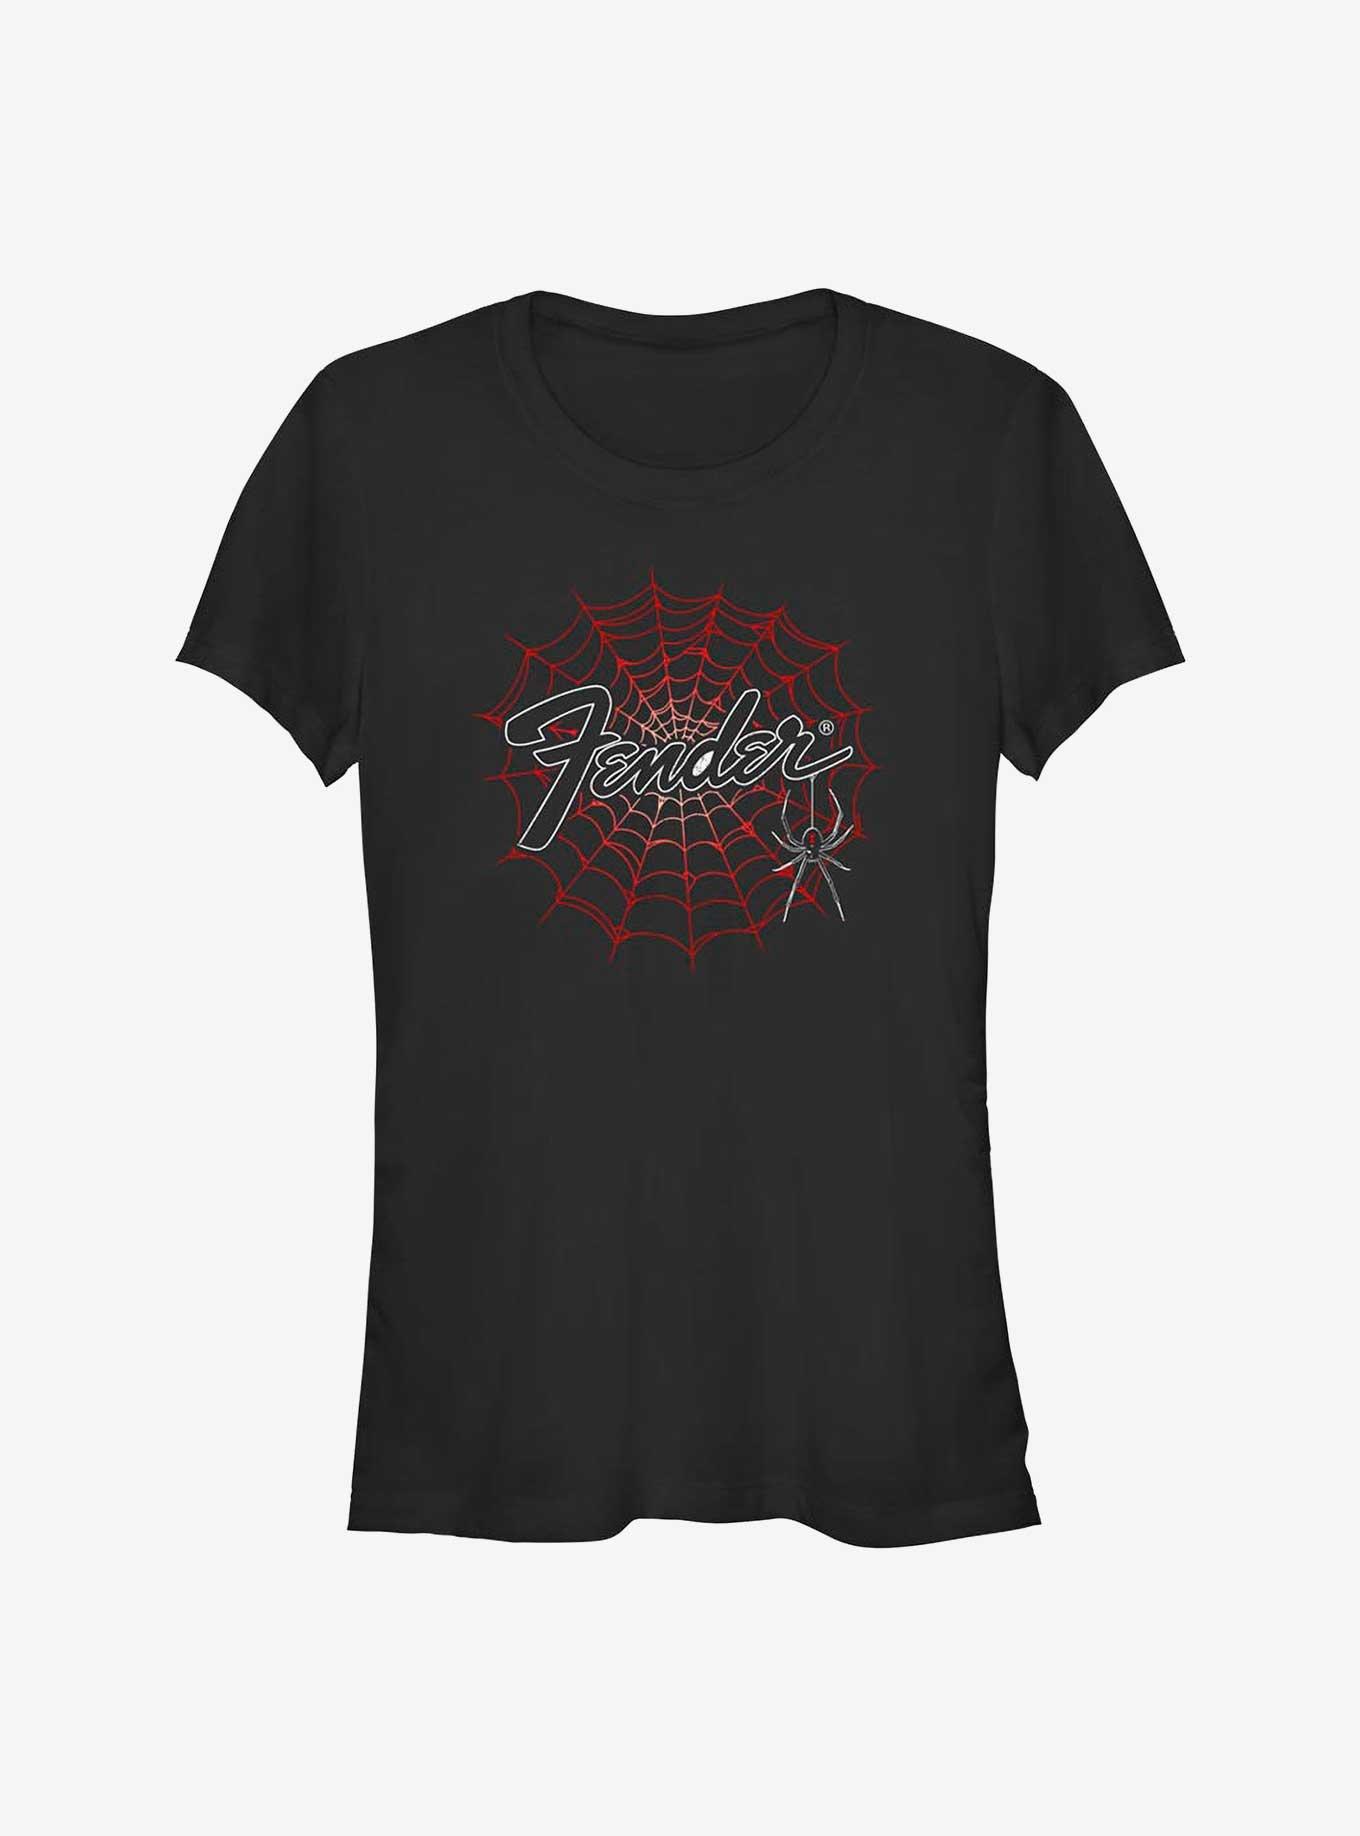 Fender Spider Web Girls T-Shirt, BLACK, hi-res